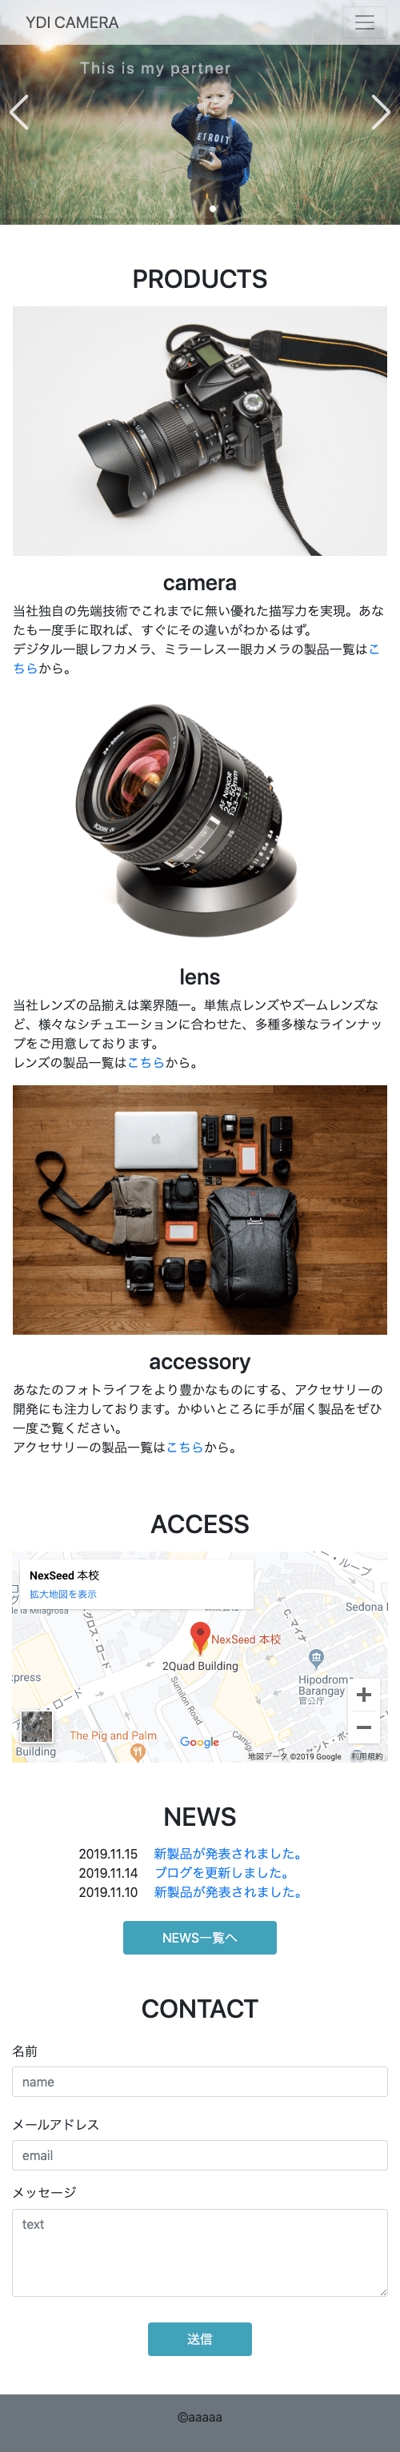 【練習】架空カメラメーカーのホームページ（スマホ版）